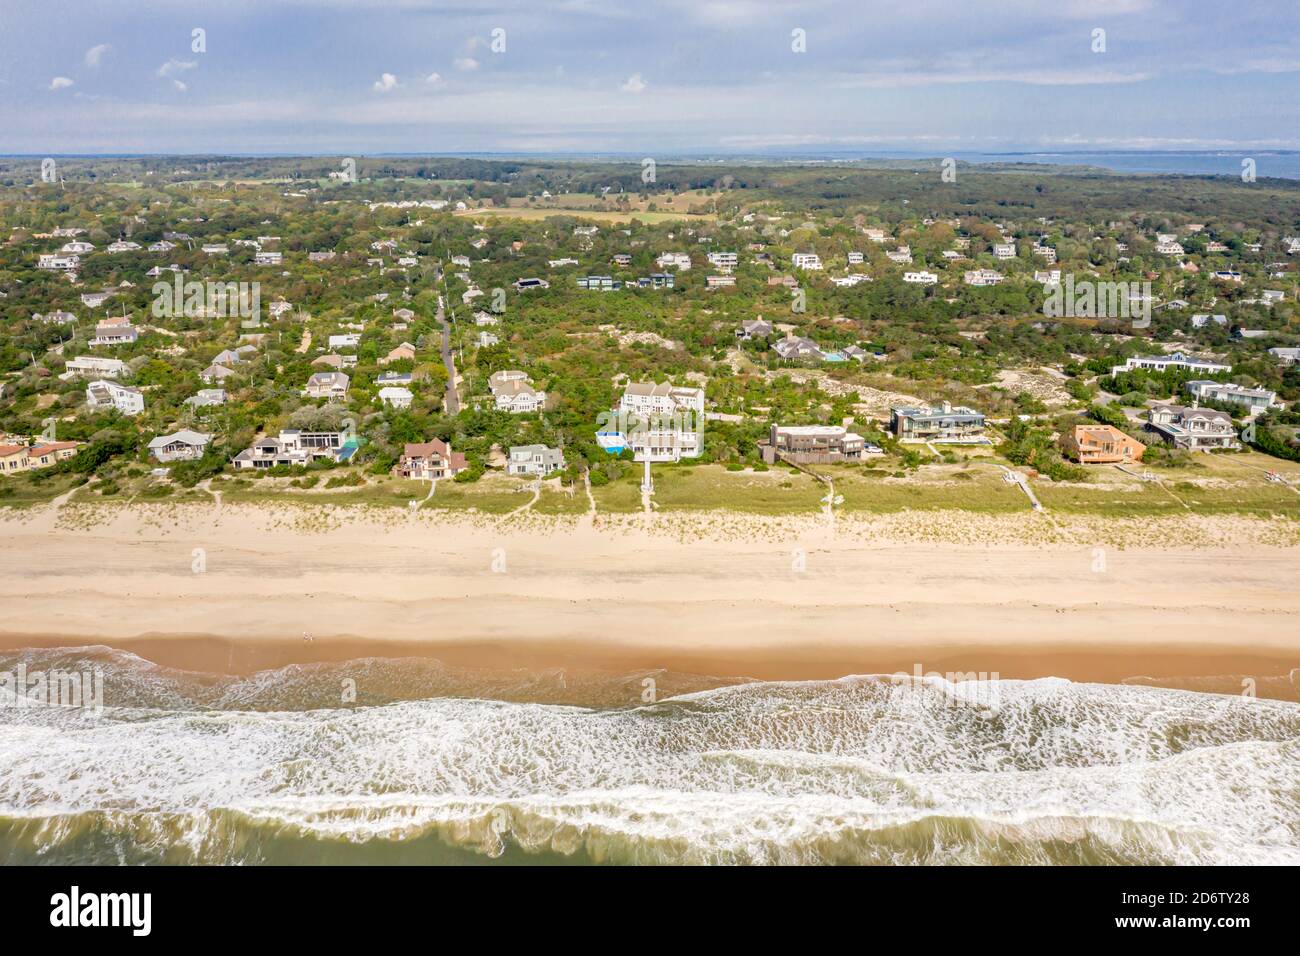 Immagine aerea della spiaggia di Amagansett e dell'Oceano Atlantico Foto Stock